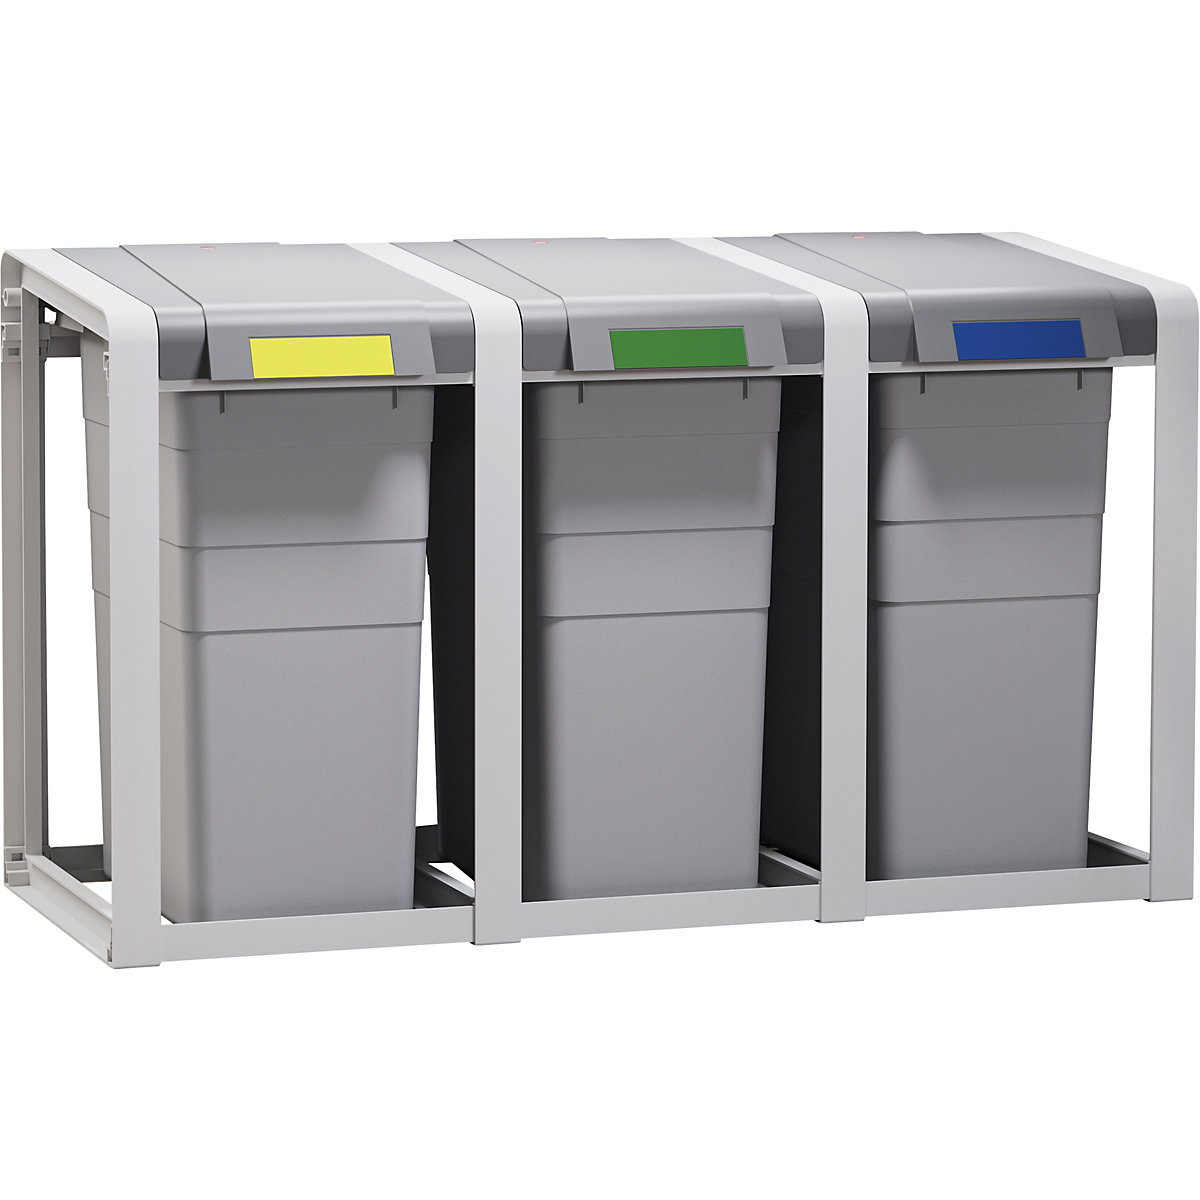 Sistema para coletores de materiais recicláveis ProfiLine Eco, flexível - Hailo